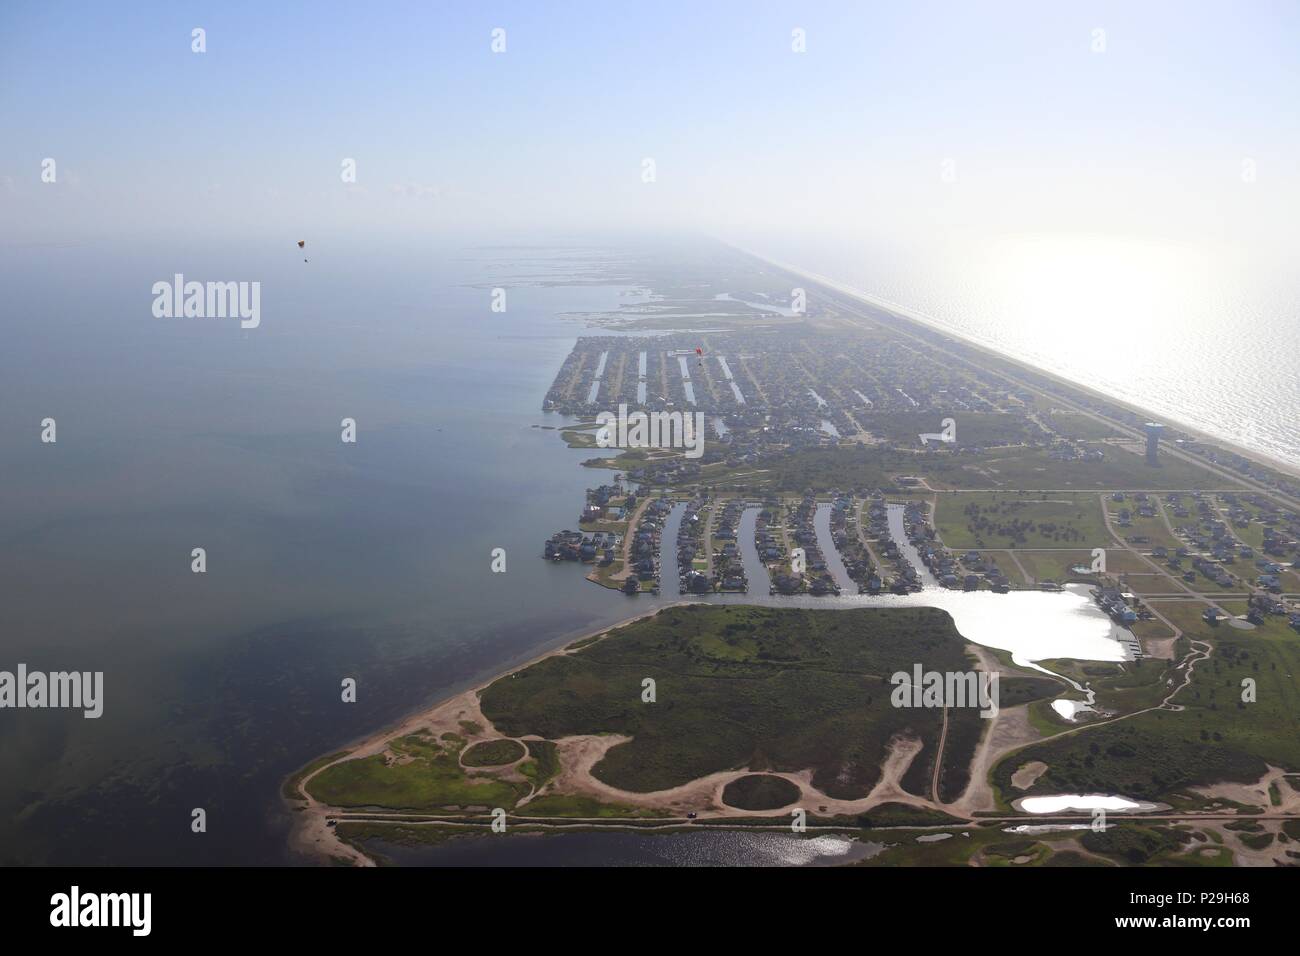 Vista aérea de la Costa del Golfo de Texas, Galveston Island, EE.UU. Haze debido al clima cálido. Dos pilotos de paramotor, inmobiliario y de viajes paisajes. Foto de stock